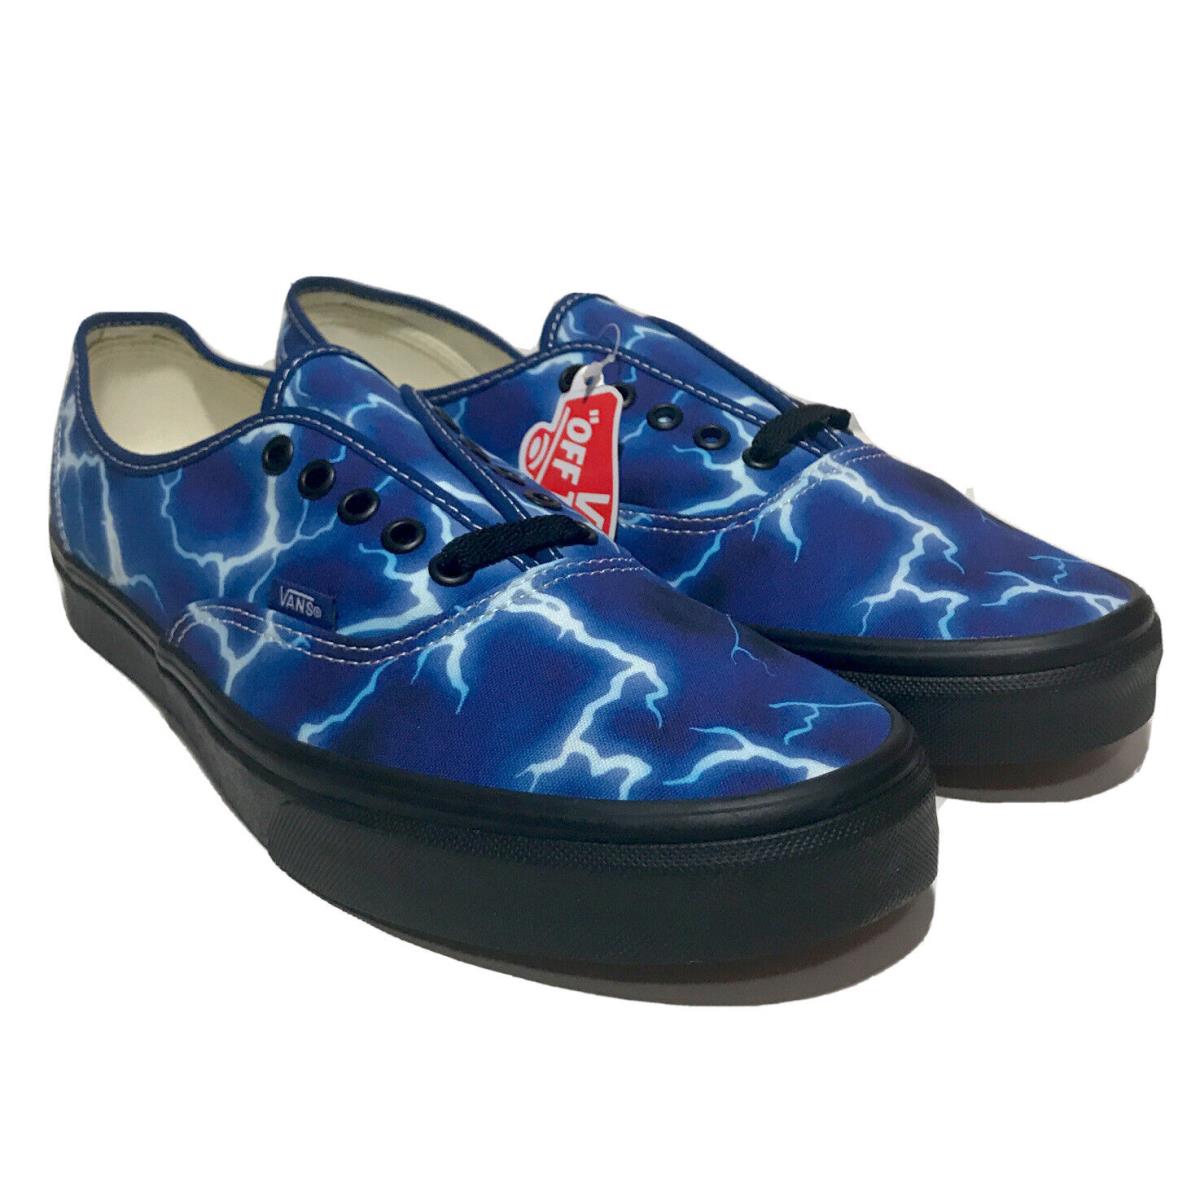 Vans Lightning Style Mens Size 10 Sneaker Blue Shoes Skateboarding